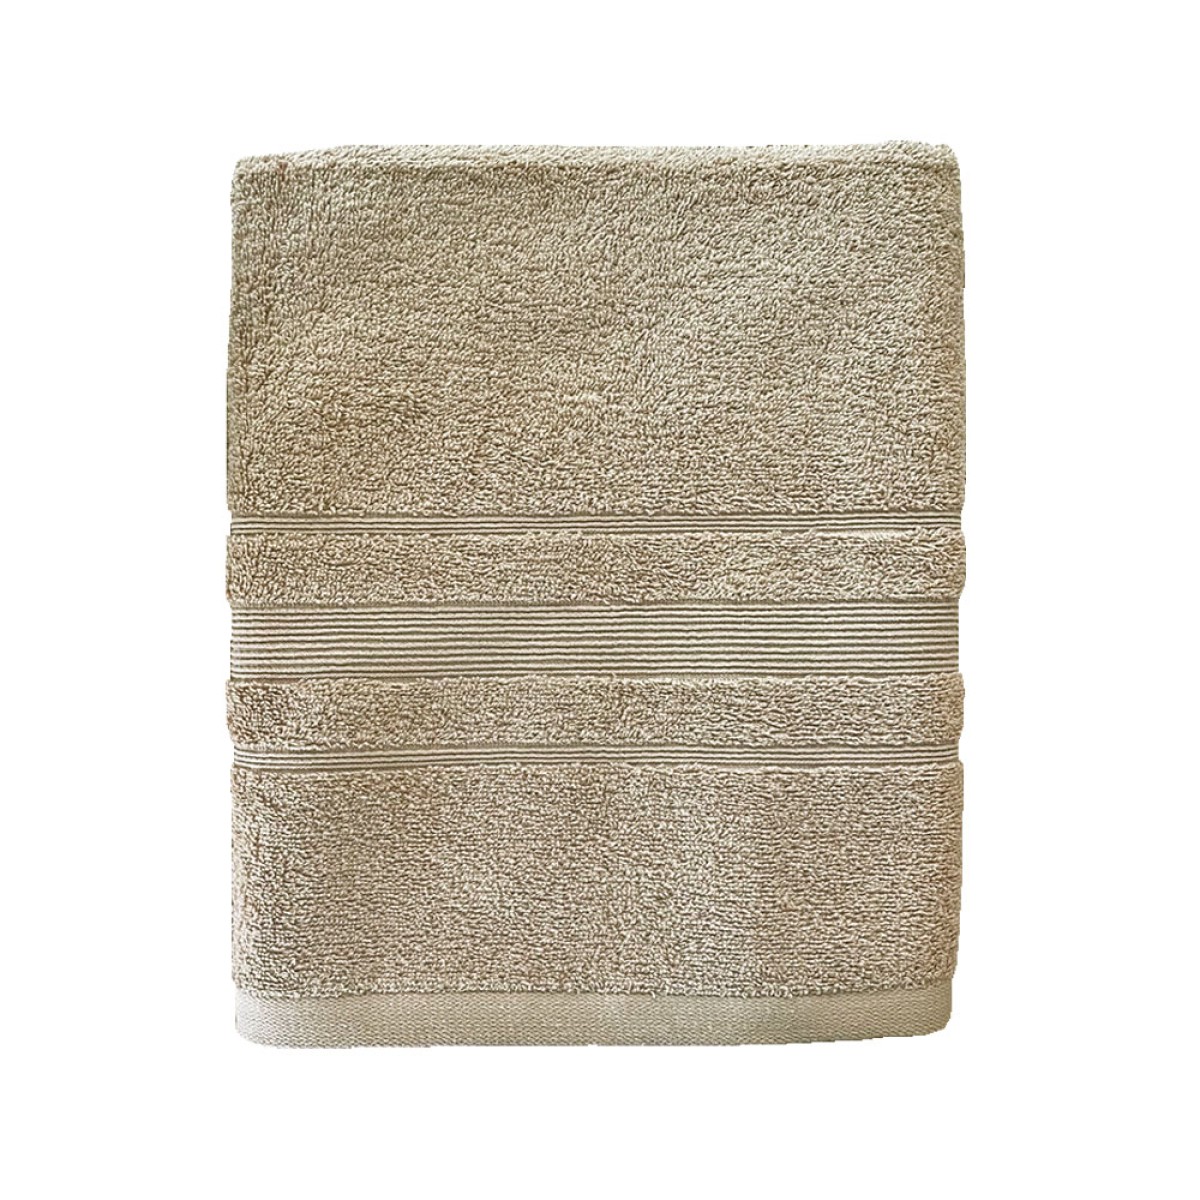 Πετσέτα Σώματος 550grs (70x140) 100% Βαμβάκι με μπορντούρα με ανάγλυφο σχέδιο μπεζ χρώμα Sidirela Line E-3203-2